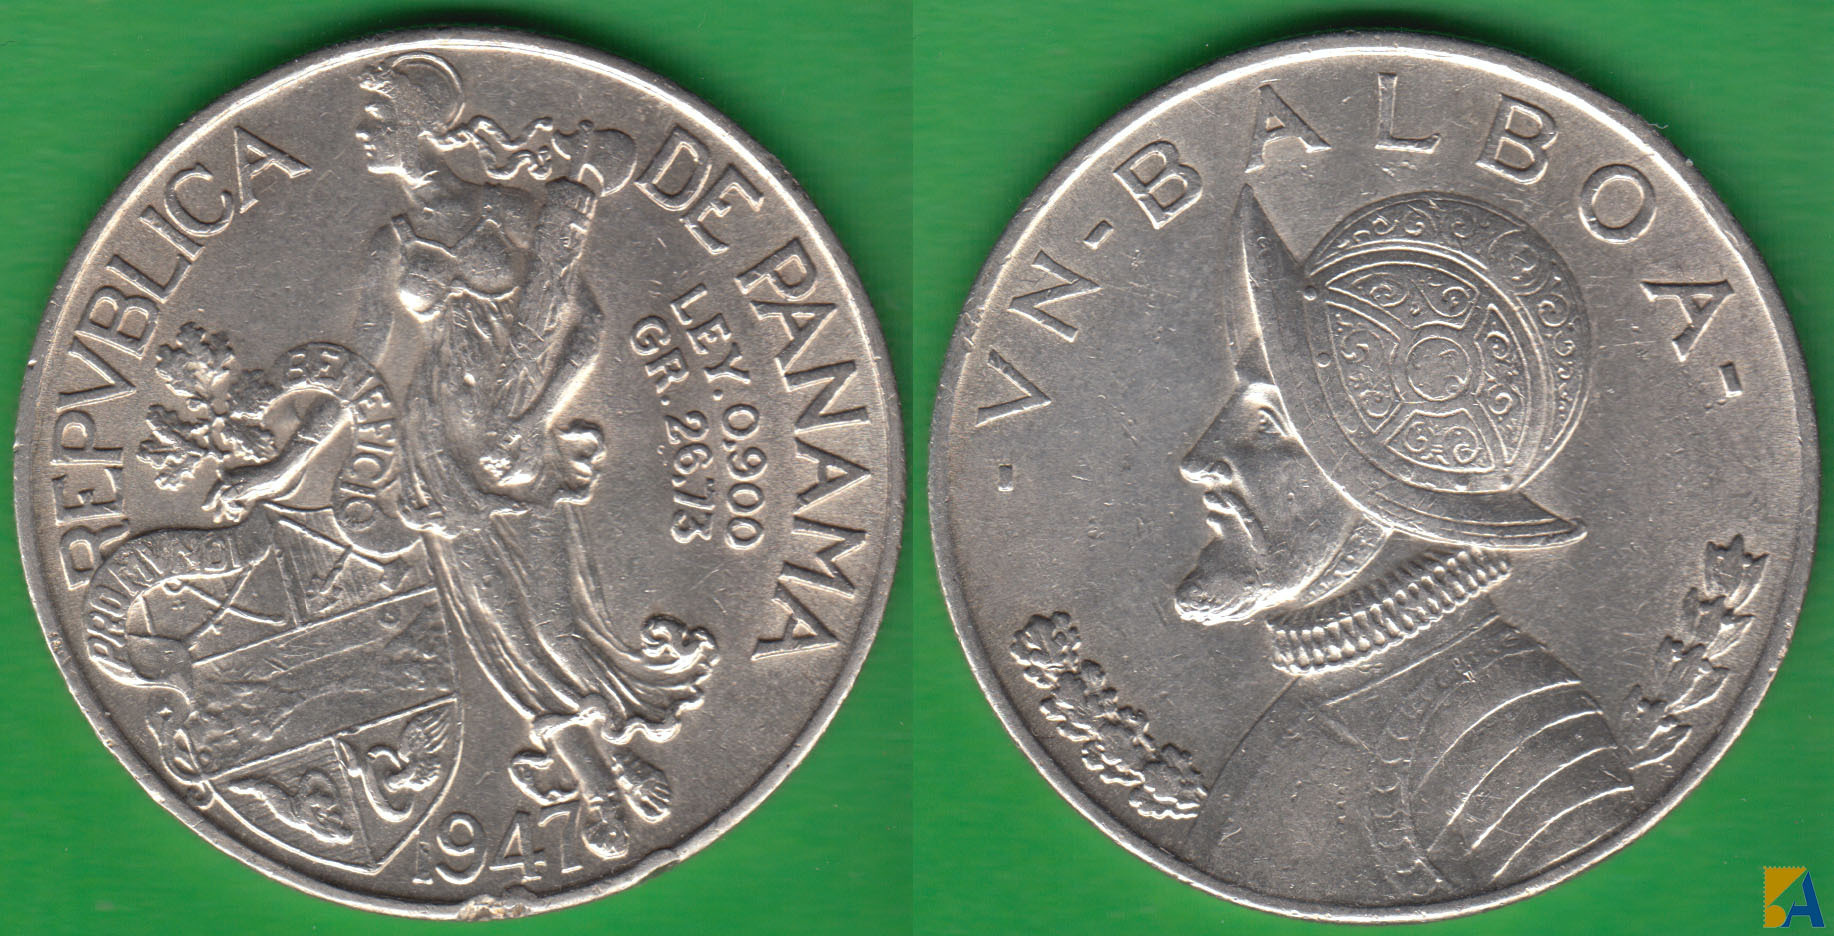 PANAMA. 1 BALBOA DE 1947. PLATA 0.900. (4)